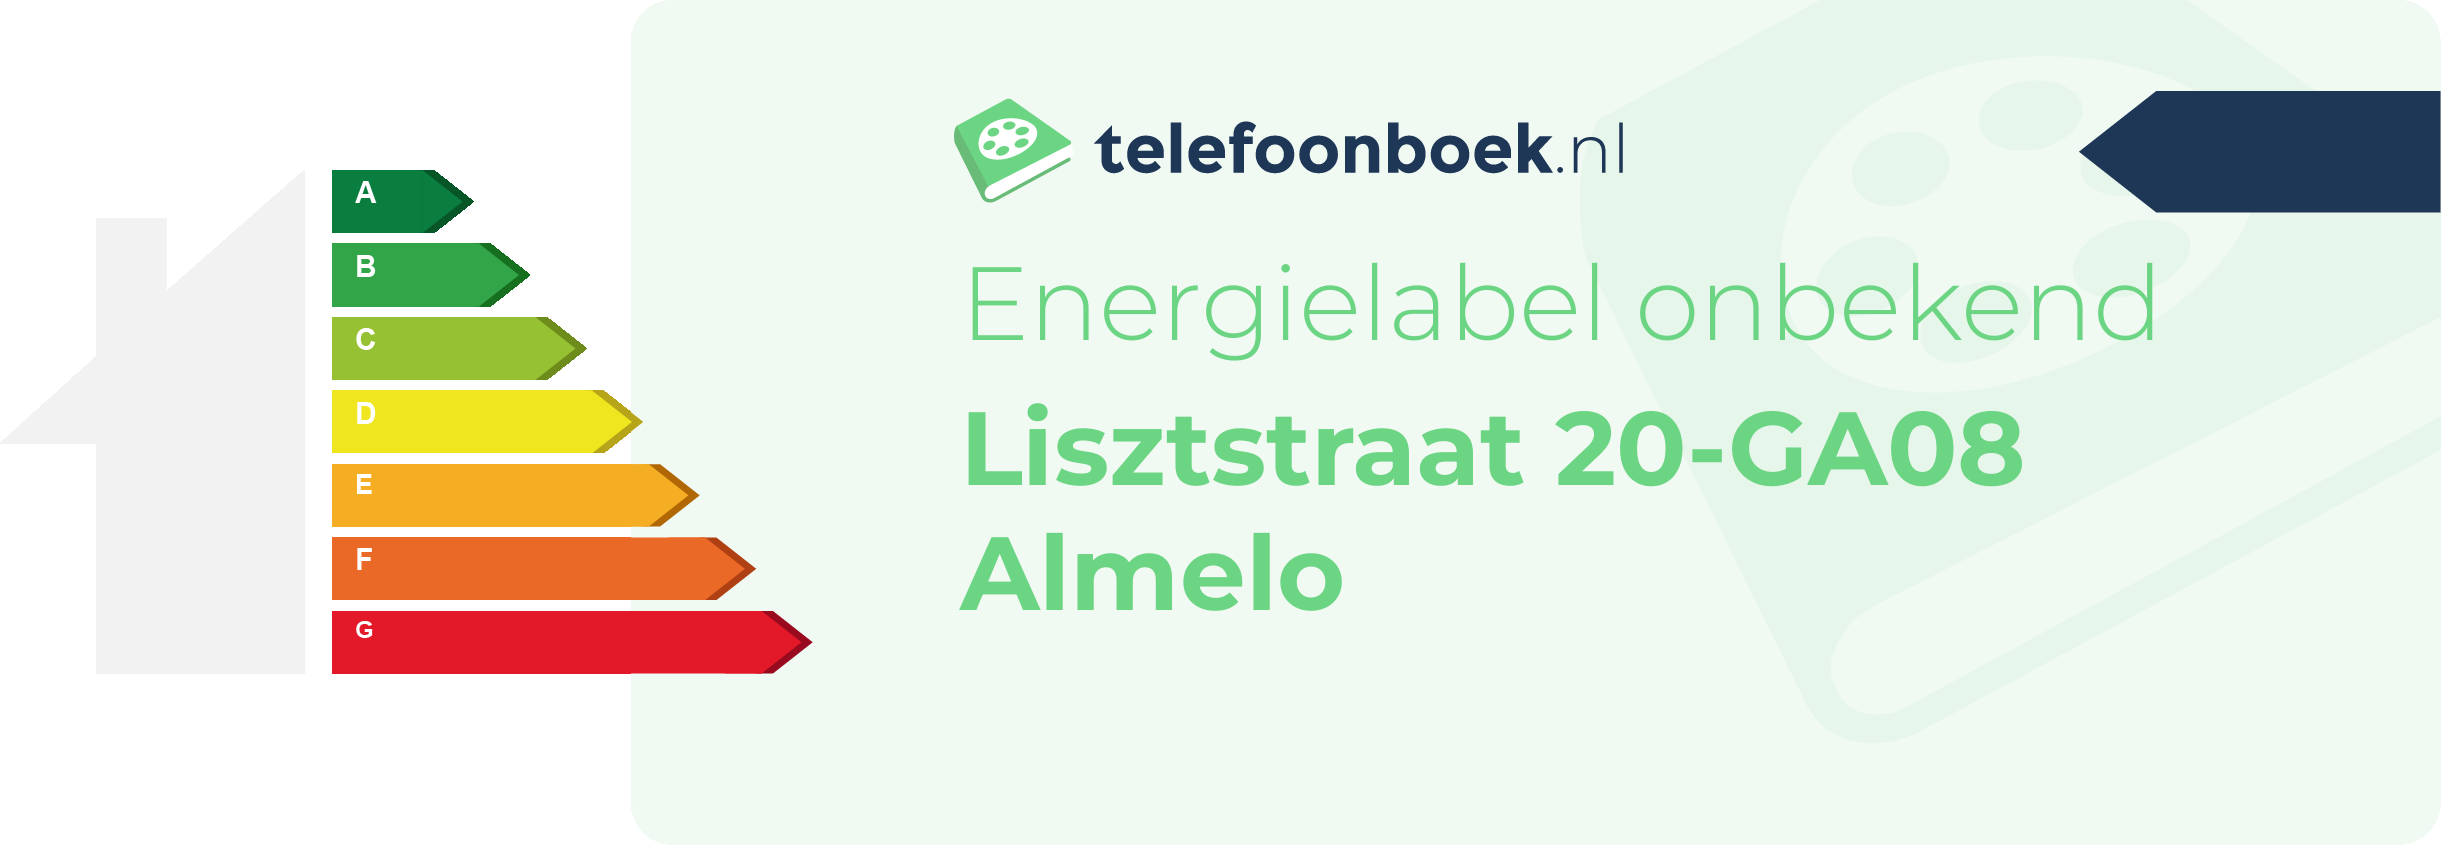 Energielabel Lisztstraat 20-GA08 Almelo